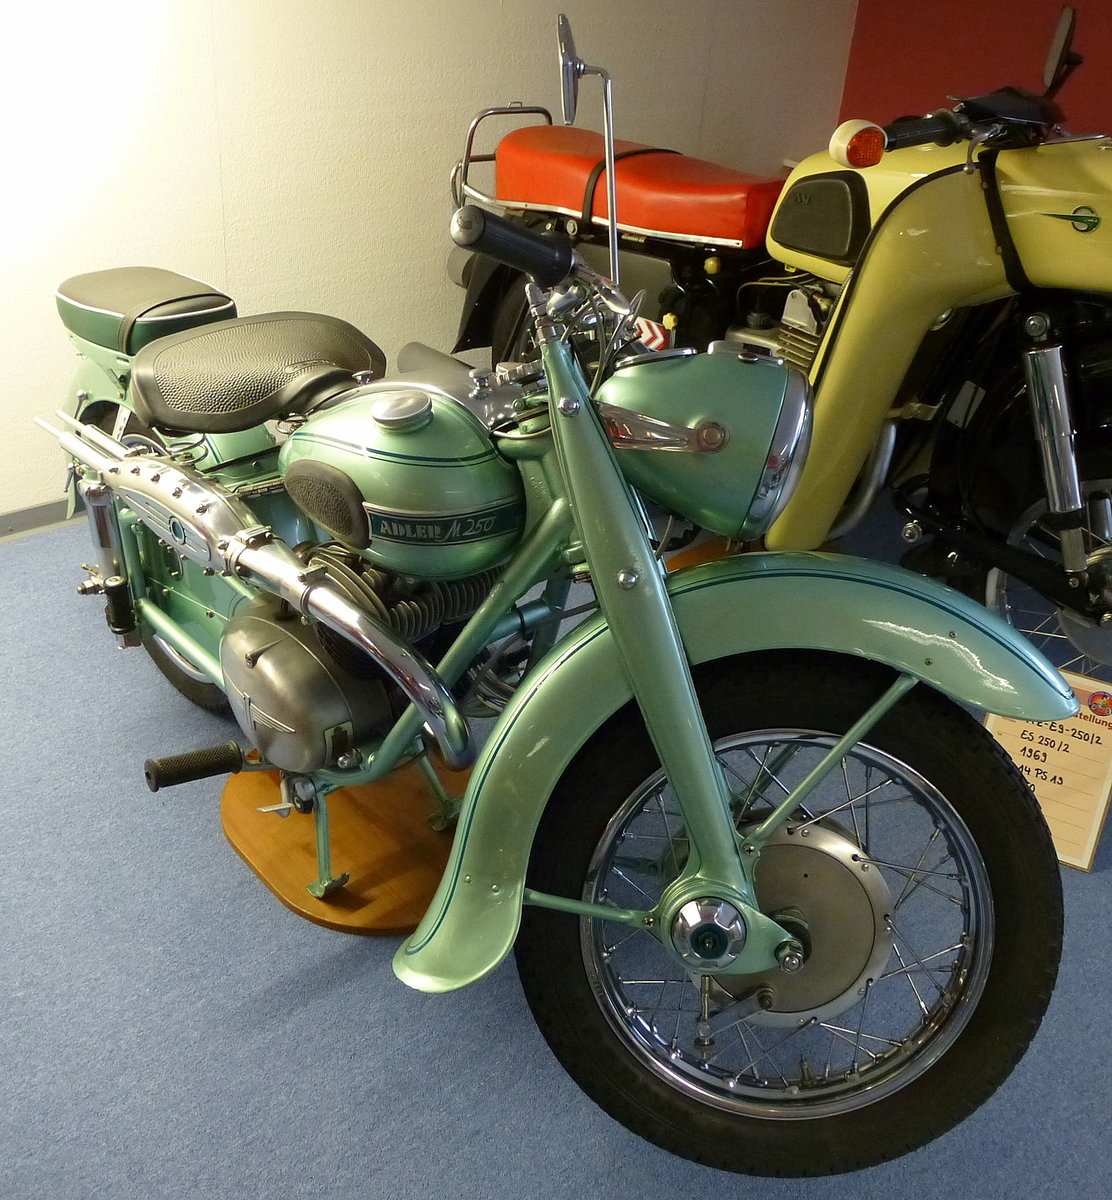 Adler M250, Baujahr 1953, 2-Zyl.-Motor, 250ccm, 16PS, Bruno's Motorradbhne Oberwolfach, Aug.2013